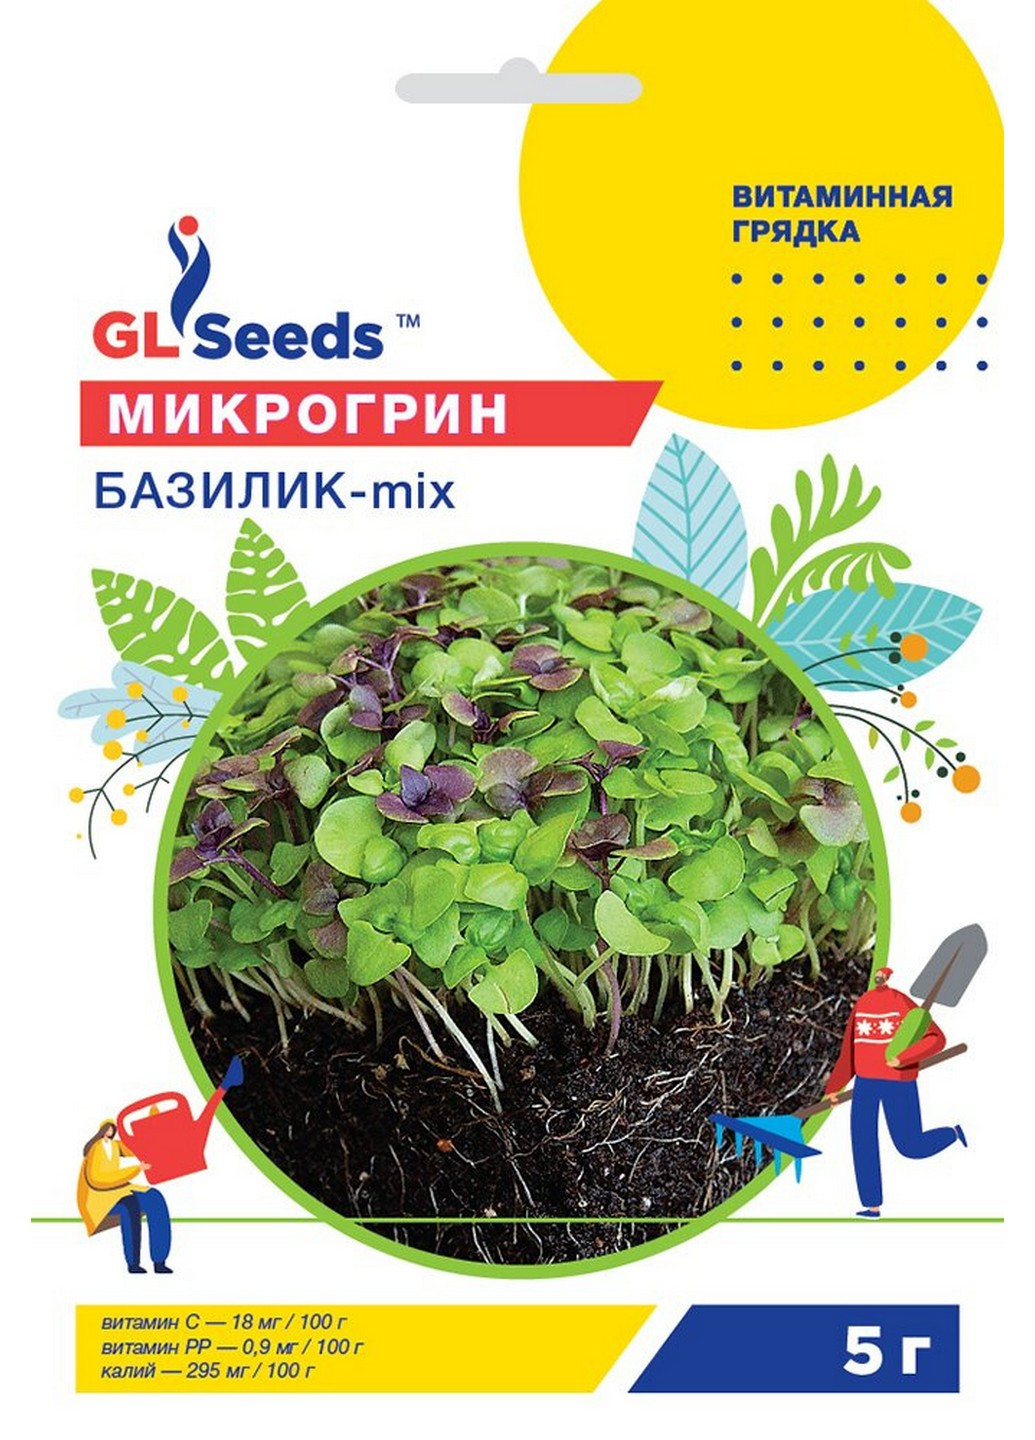 Микрозелень Базилик микс 5 г GL Seeds (215484583)